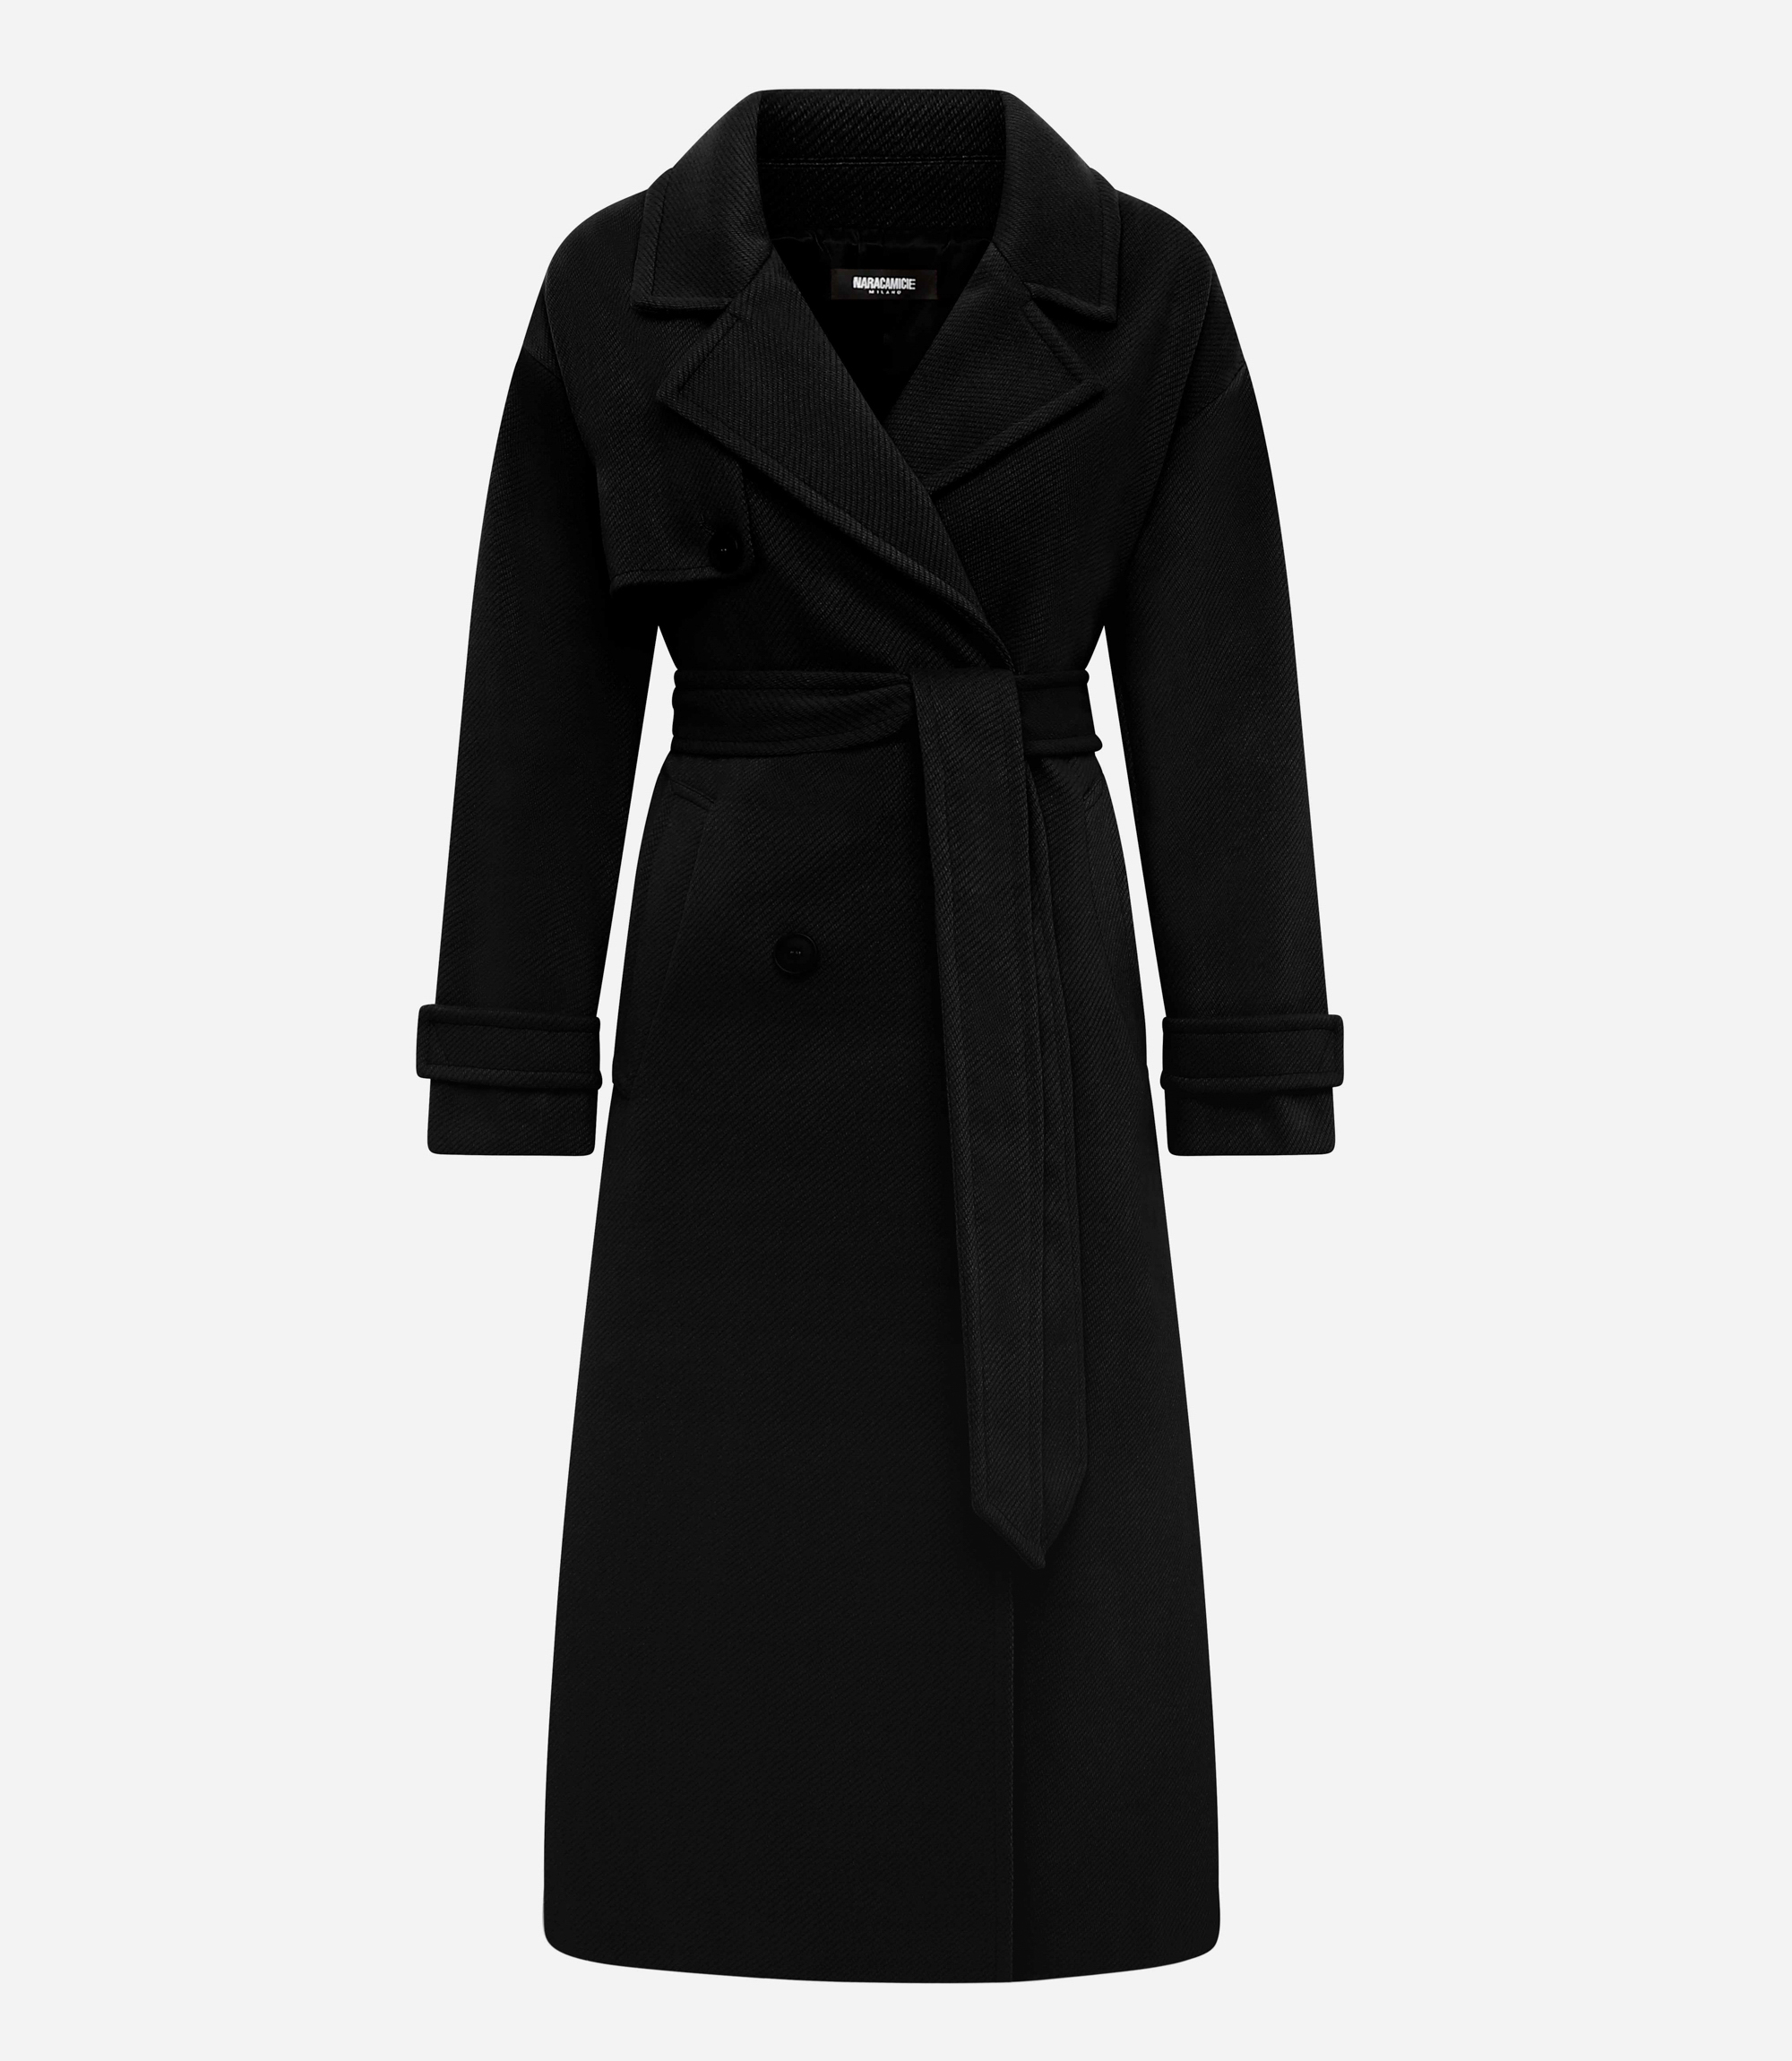 Wool trench coat - CLOTHING - Nara Milano